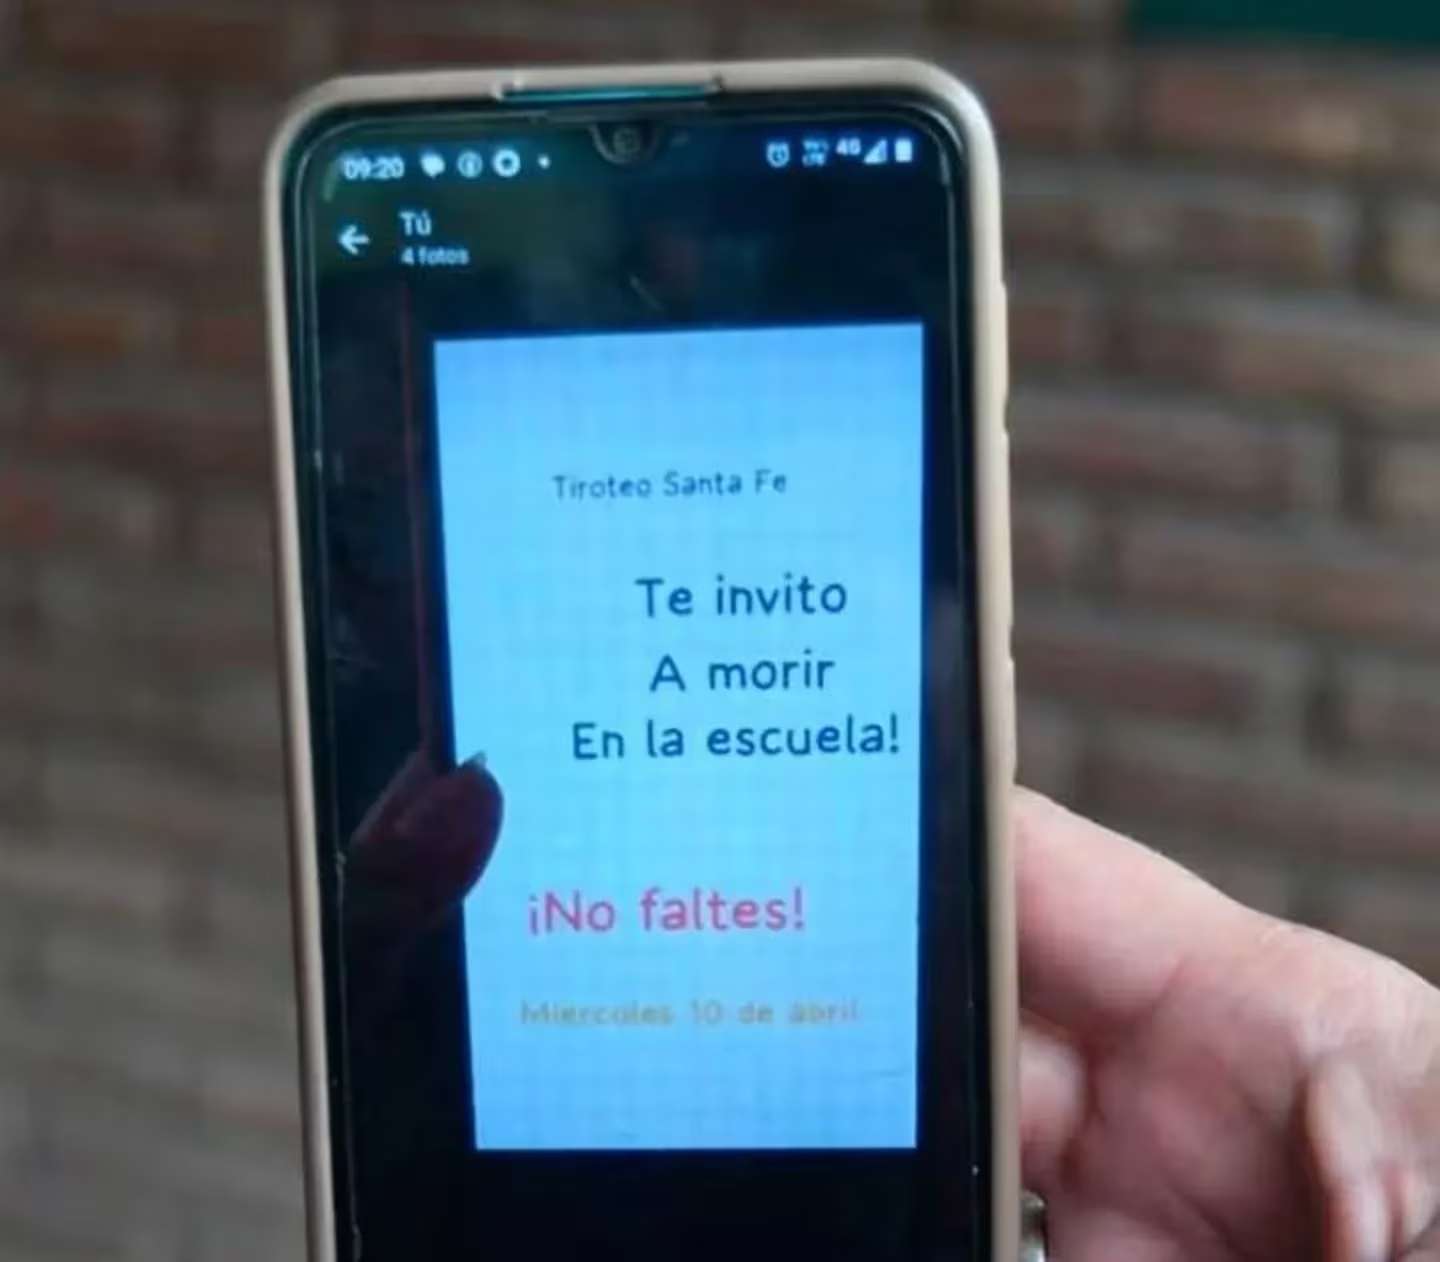 Un mensaje viral causó terror en una escuela de Santa Fe: “Te invito a morir”